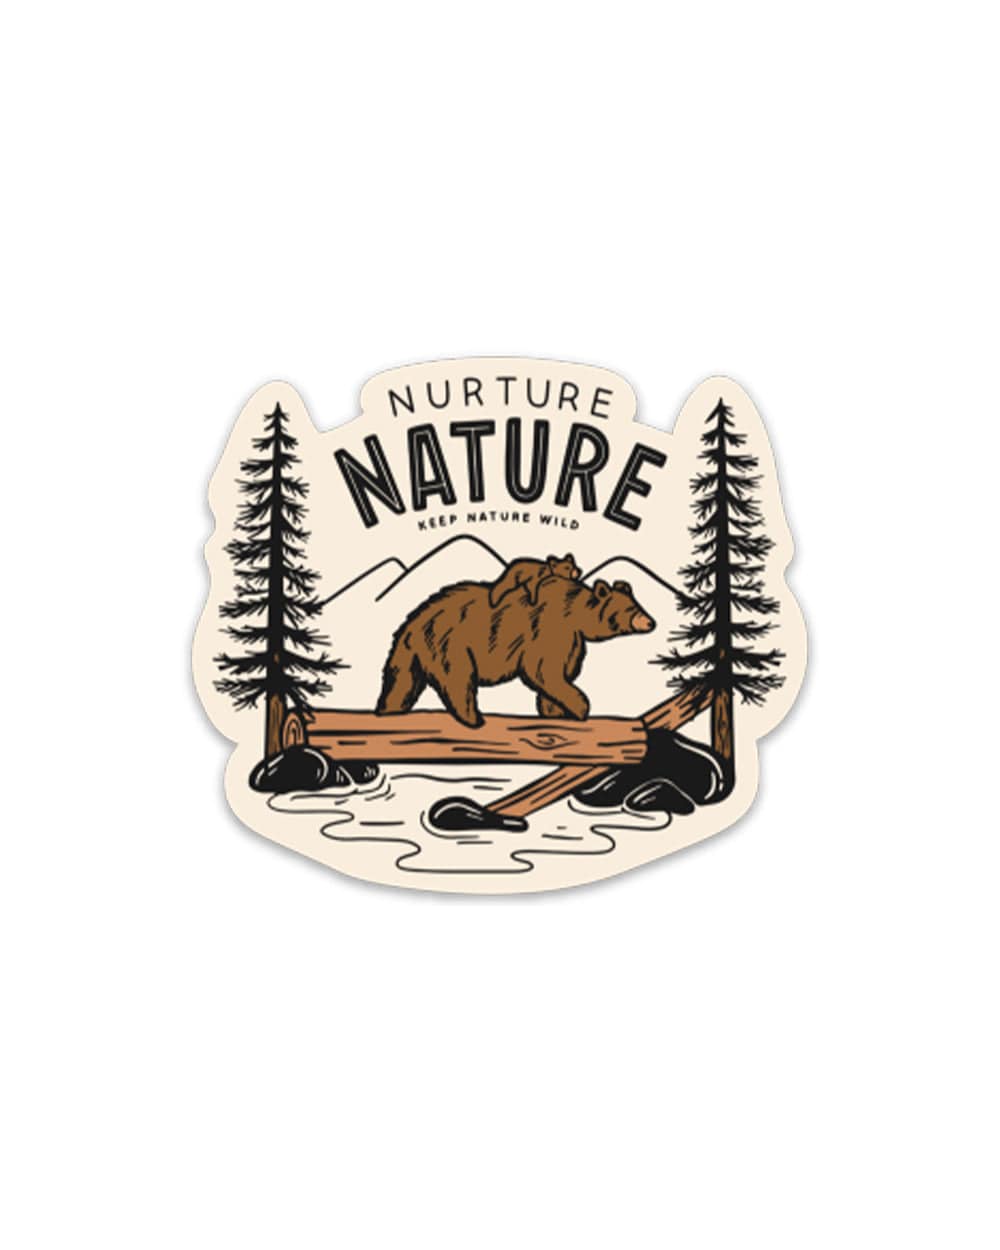 Keep Nature Wild Sticker Nurture | Sticker